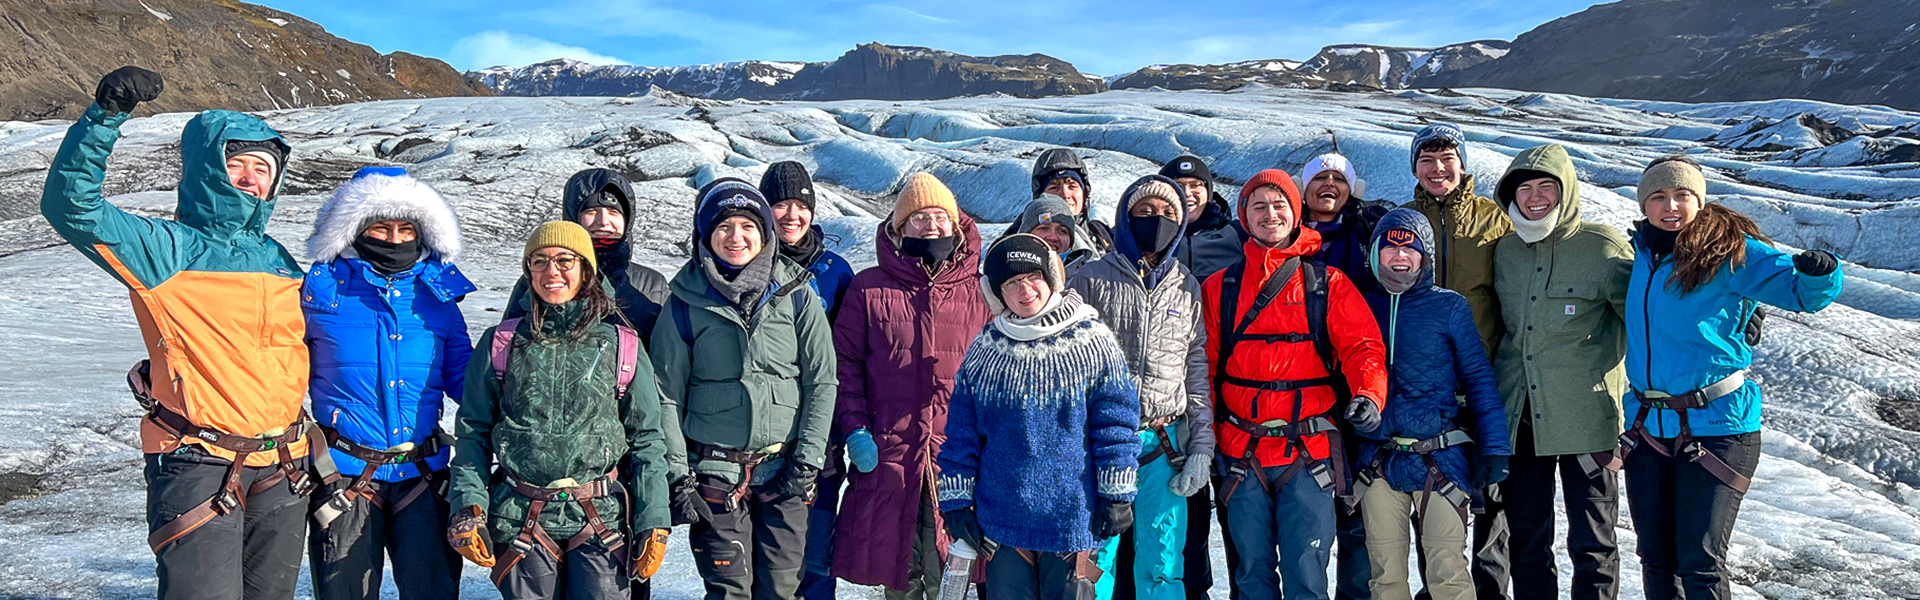 Group at glacier